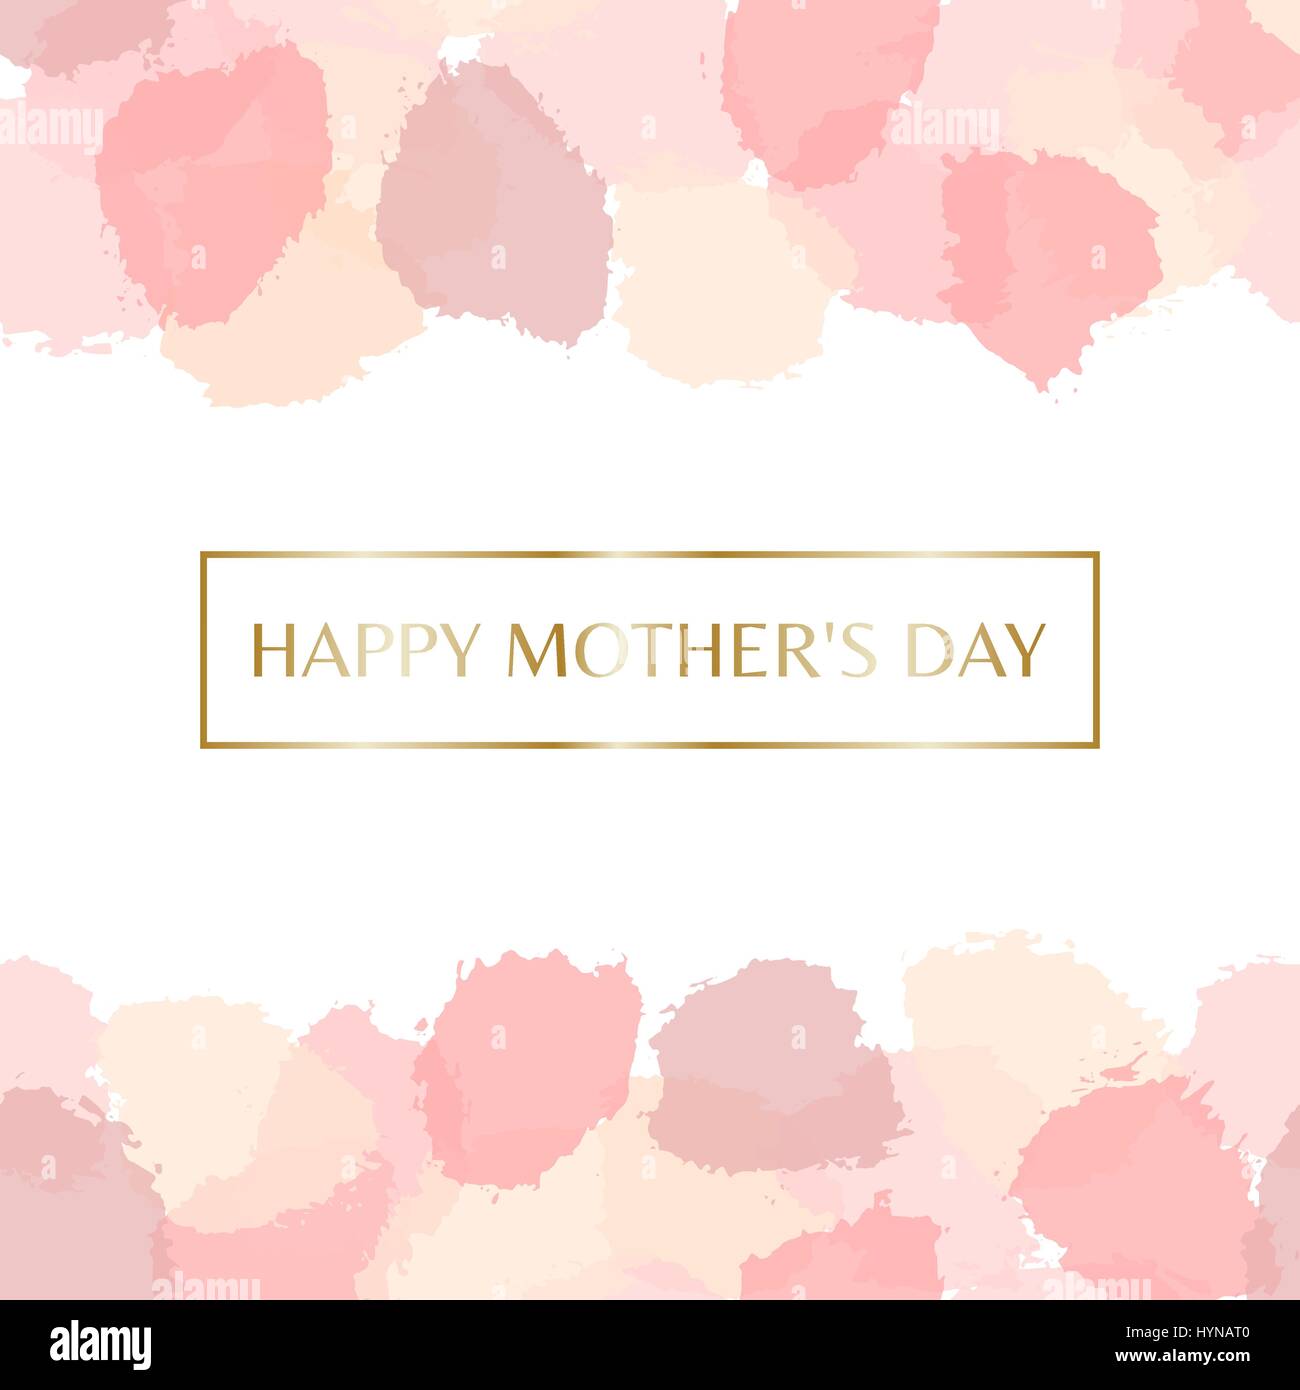 Muttertags-Grußkarte design mit goldenen Lettern Nachricht und Pastell rosa Aquarell Pinselstriche im Hintergrund. Stock Vektor